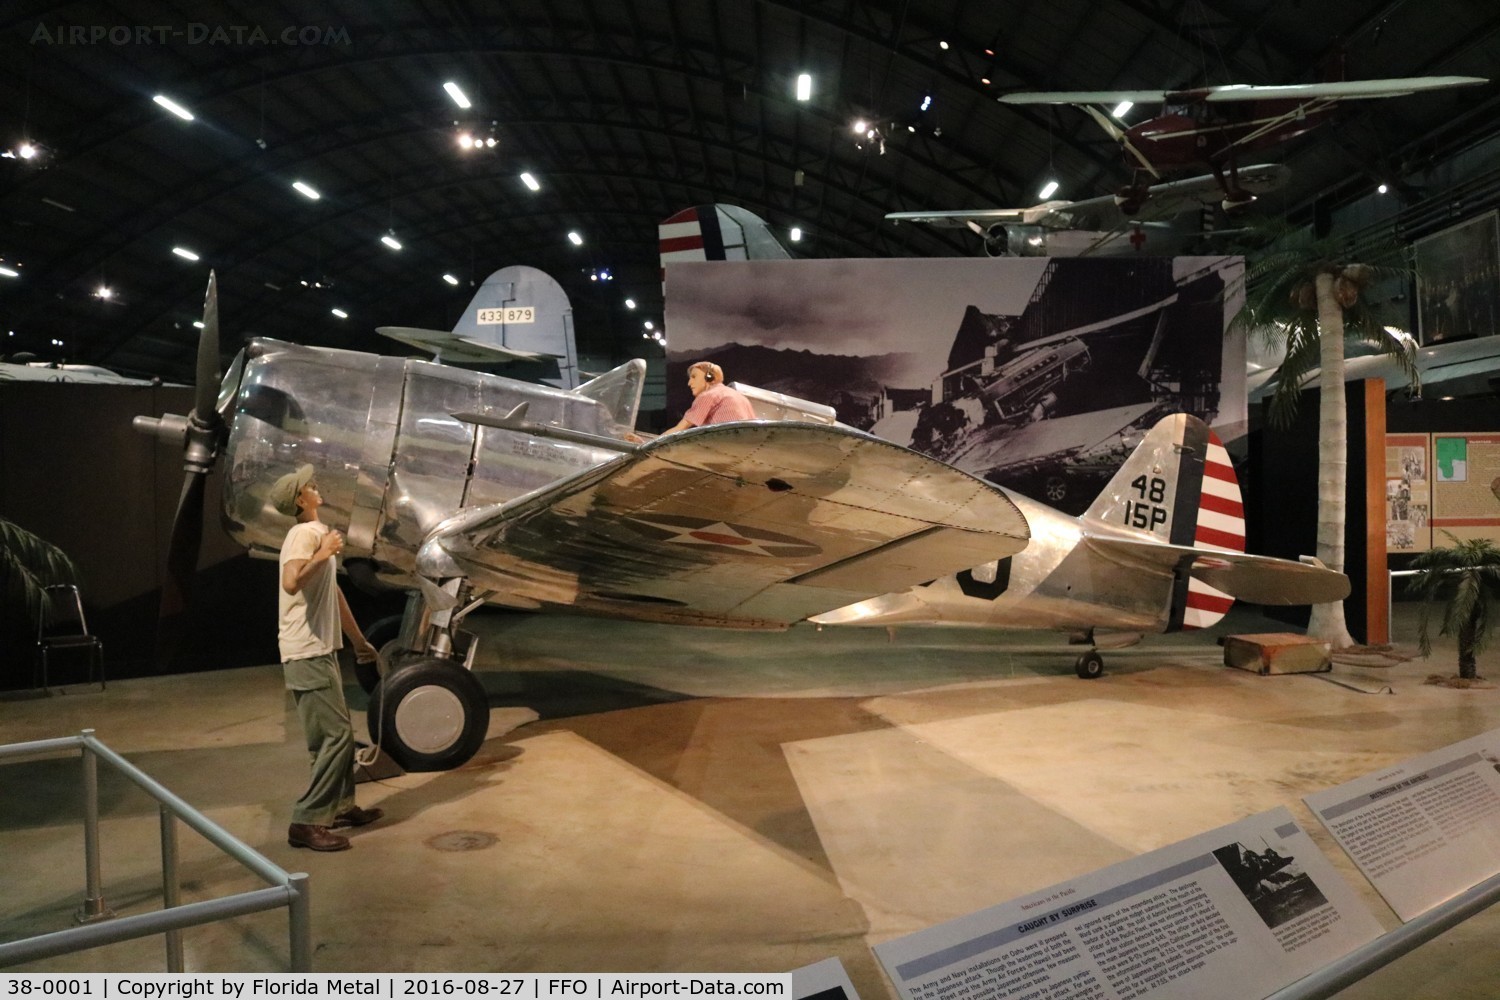 38-0001, 1938 Curtiss P-36 Hawk C/N 12415, P-36 Hawk